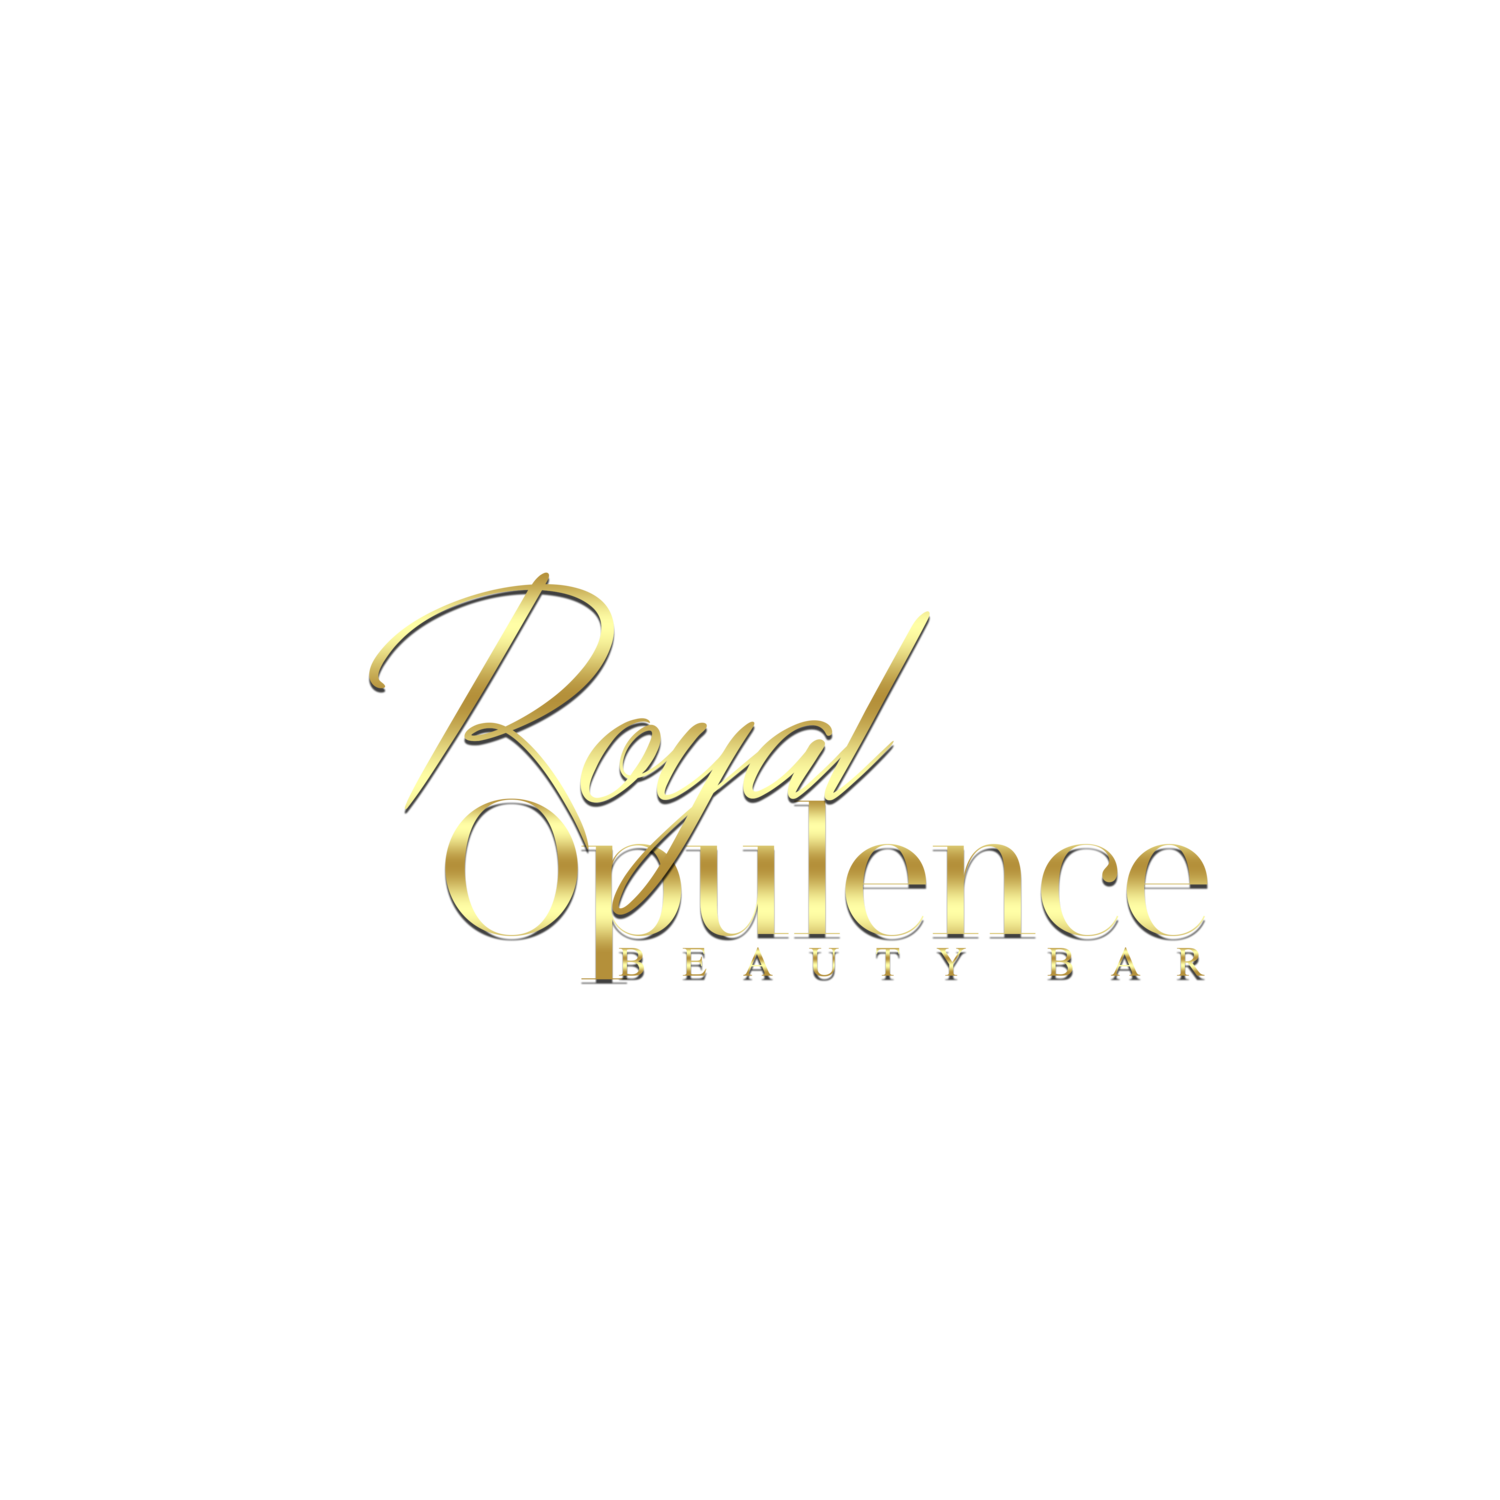 Royal Opulence Beauty Bar